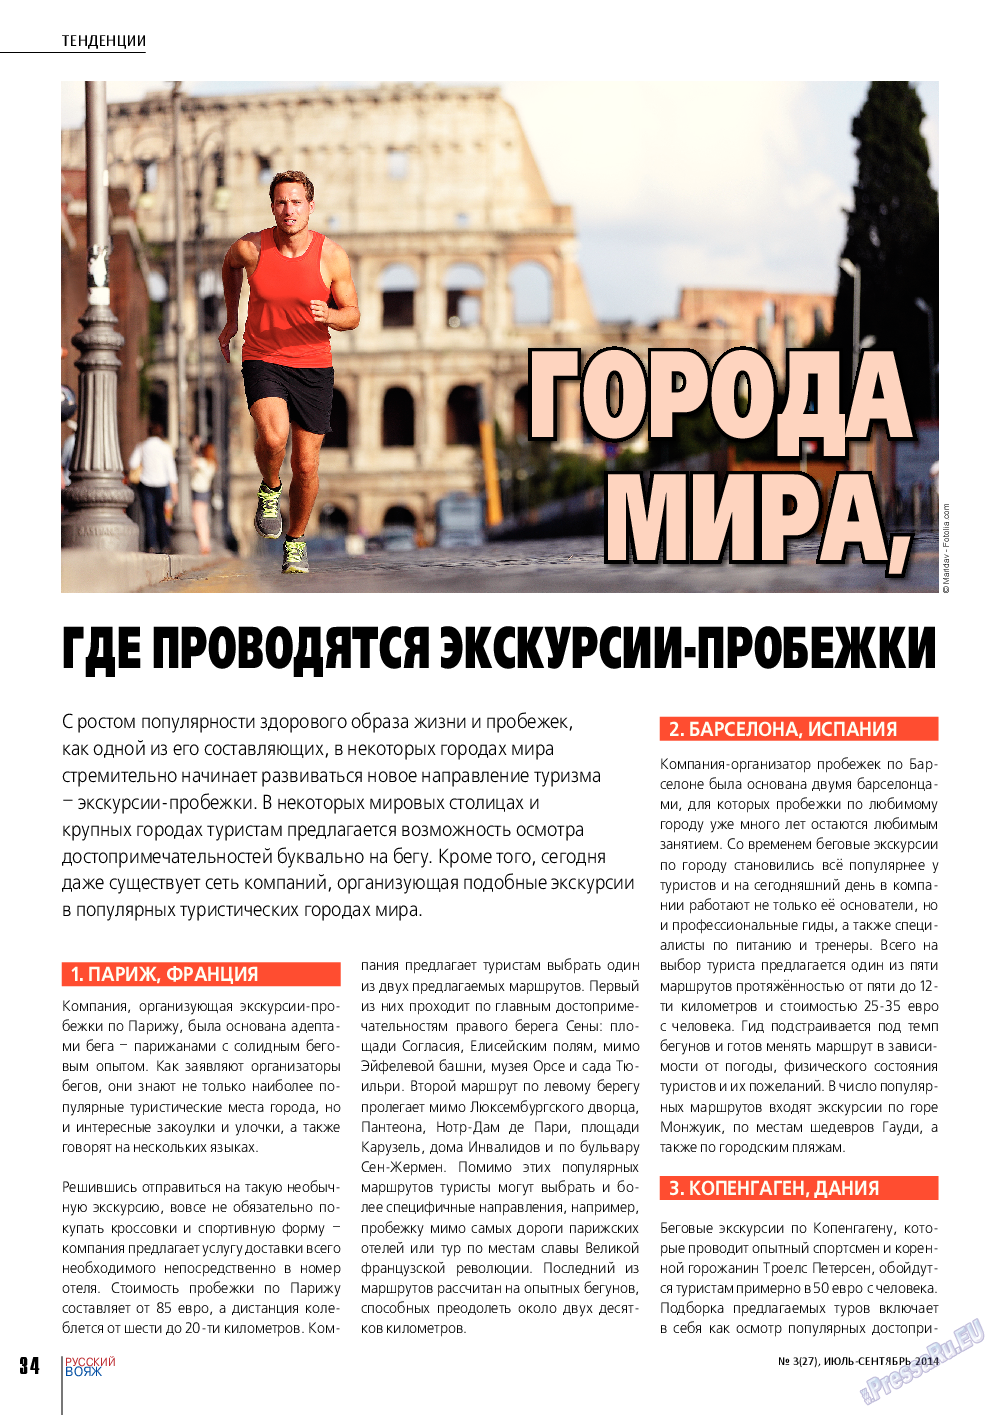 Русский вояж (журнал). 2014 год, номер 3, стр. 34